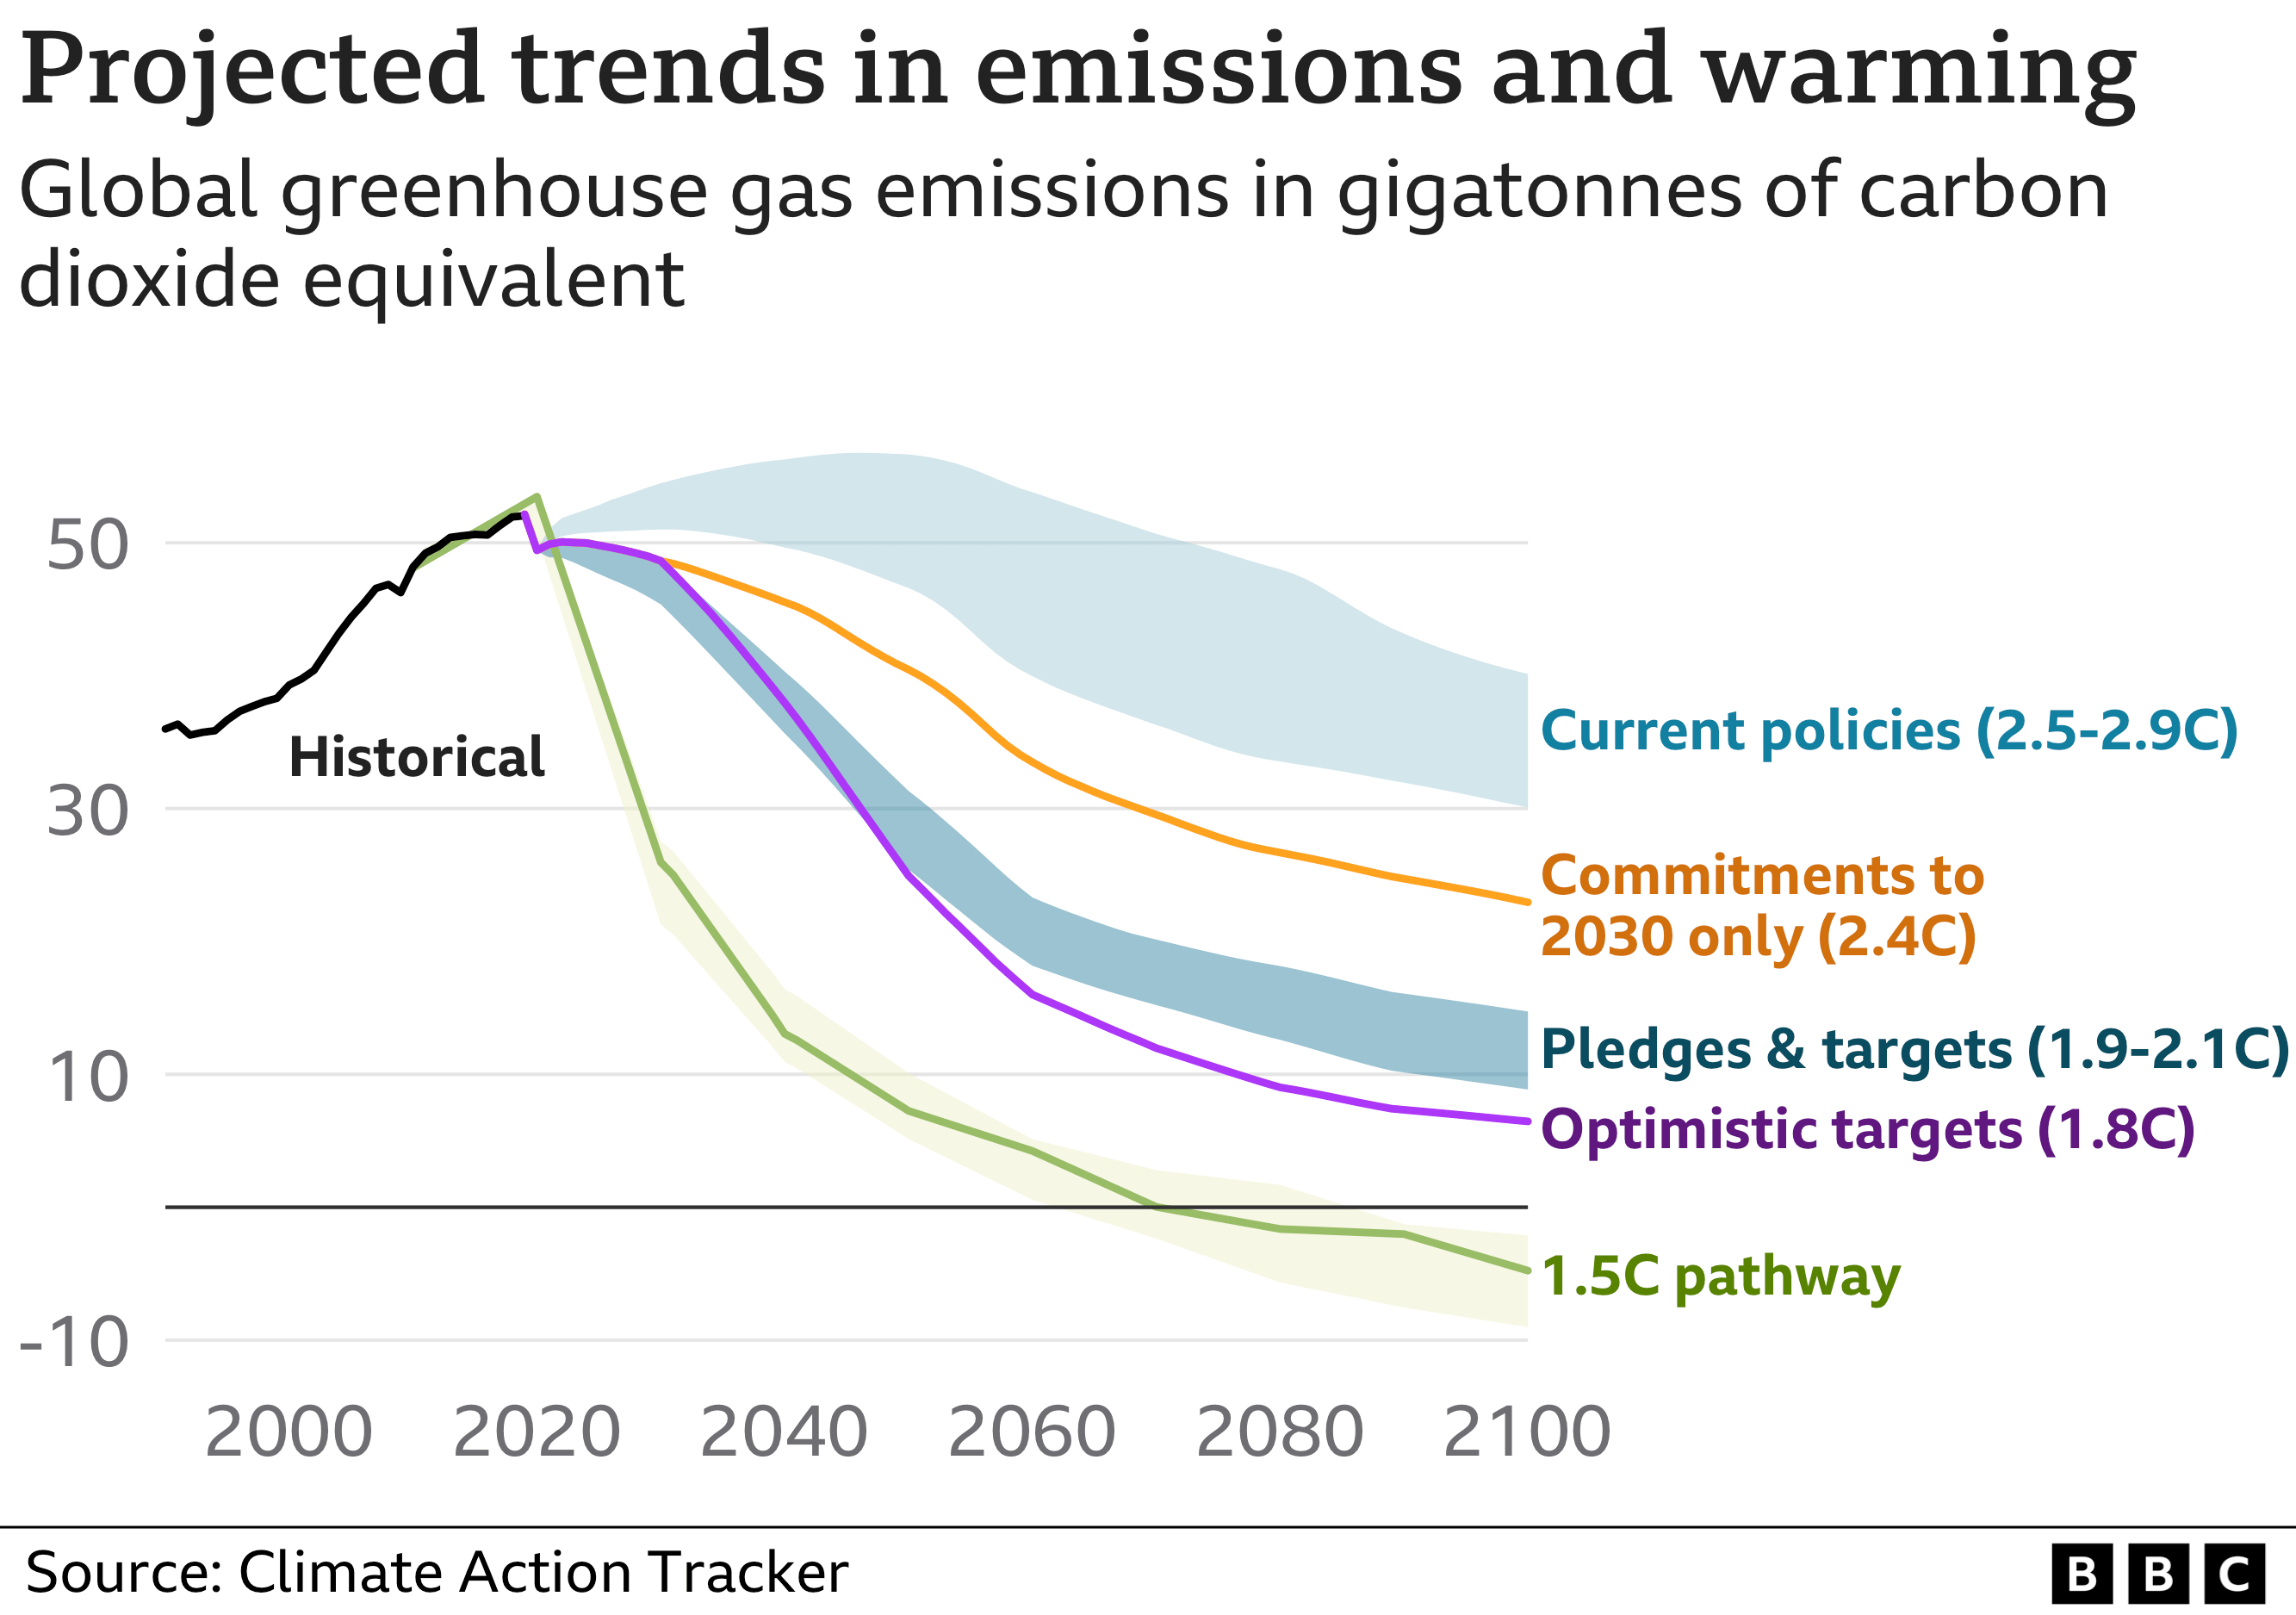 Gráfico que muestra las tendencias previstas en las emisiones y los niveles de calentamiento. Según las políticas actuales, el mundo se encamina a un calentamiento de unos 2,7C para 2100.